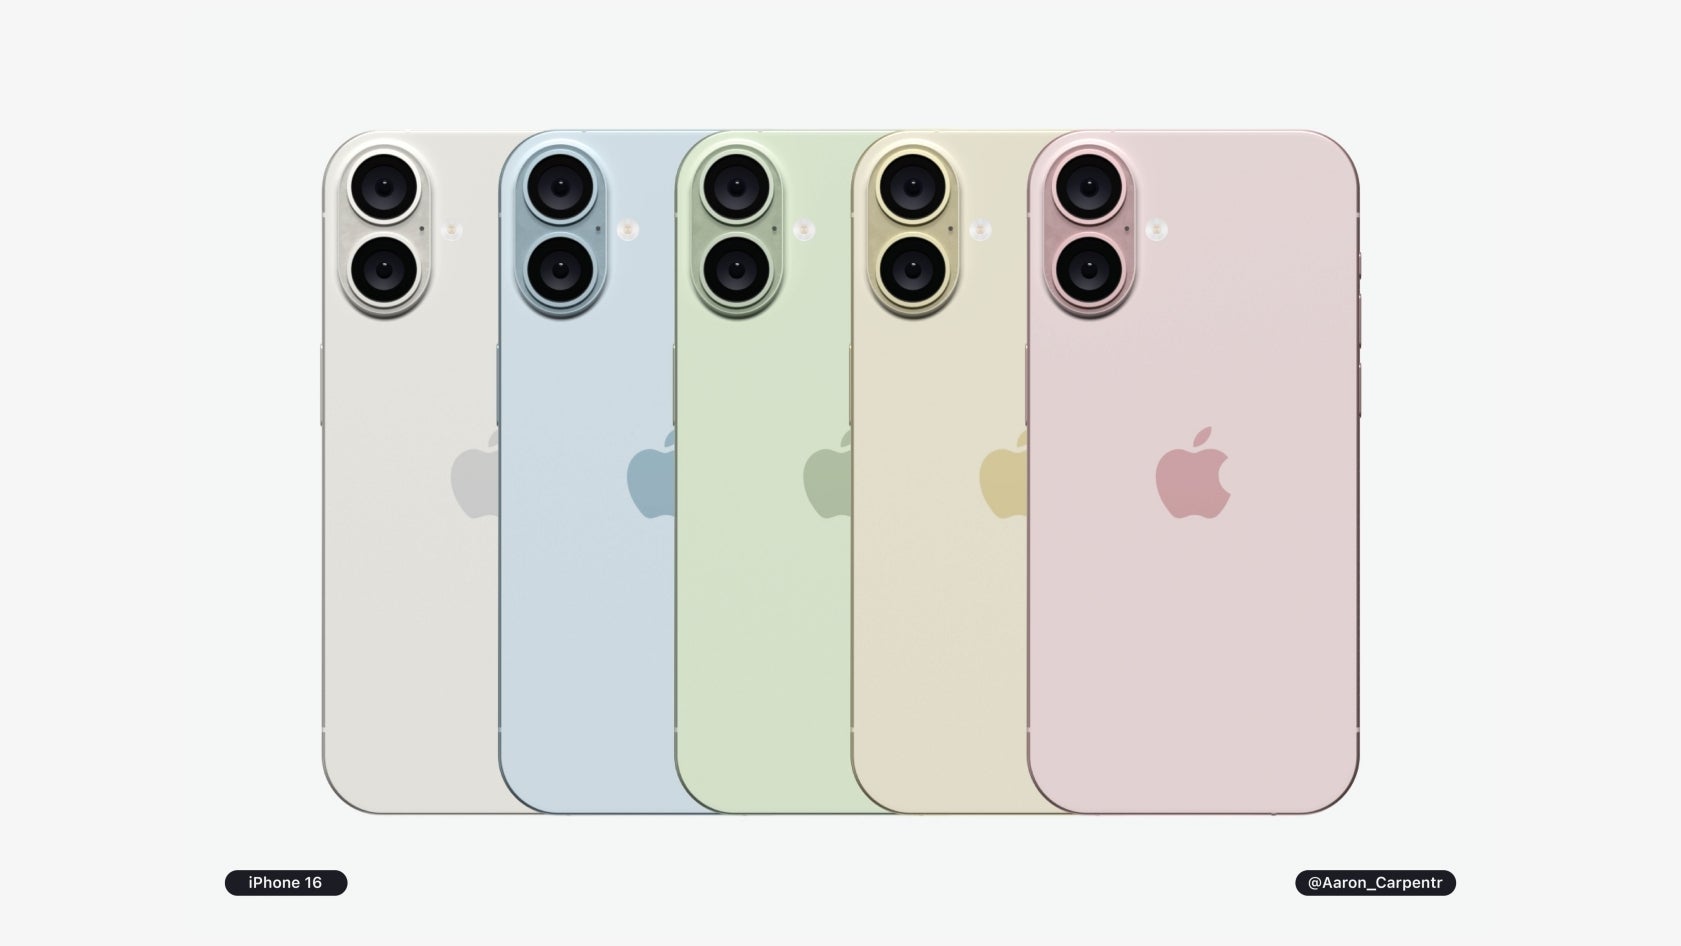 Şu ana kadar gördüğümüz en yeni ve (sözde) en doğru iPhone 16 tasarım sızıntısı.  - 30 milyon kişi “şimdiye kadarki en kötü iPhone”u satın aldı: Apple'ın telefon pazarındaki kült benzeri etkisi